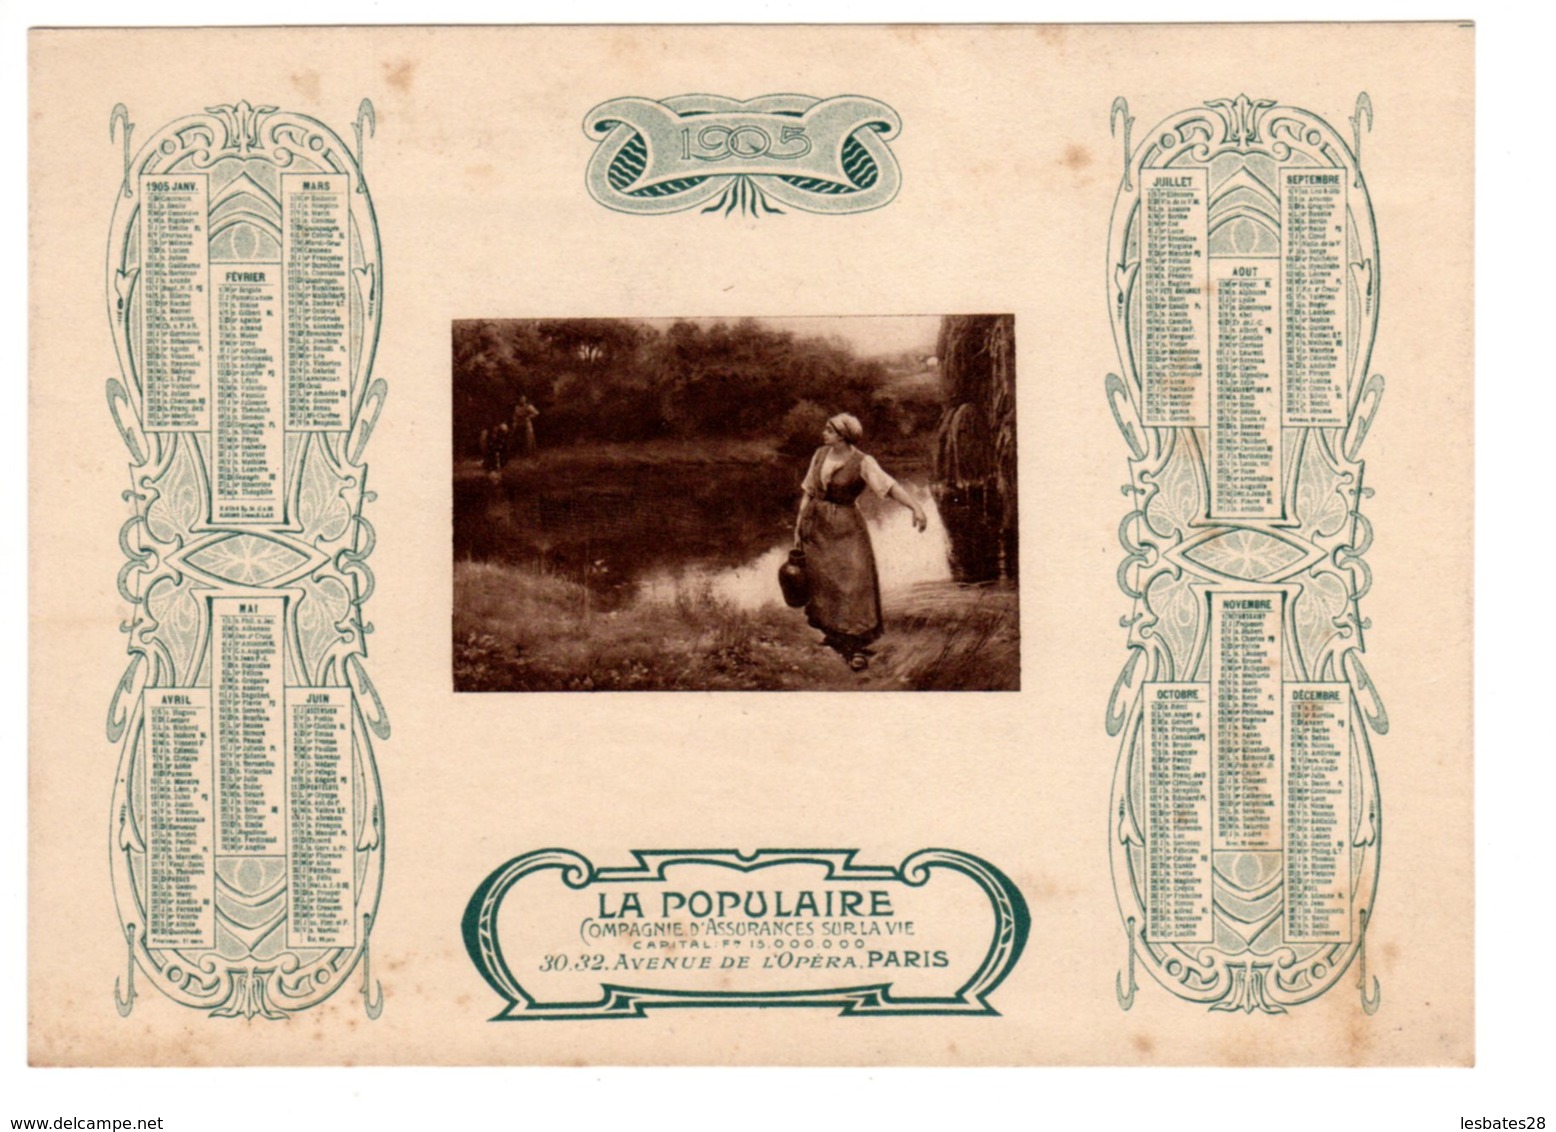 Almanach-CALENDRIER 1905 LA POPULAIRE Compagnie D'Assurance Sur La Vie Publicité Allegorie Porteuse D'Eau FEVR 2019 ABL4 - Formato Grande : 1901-20